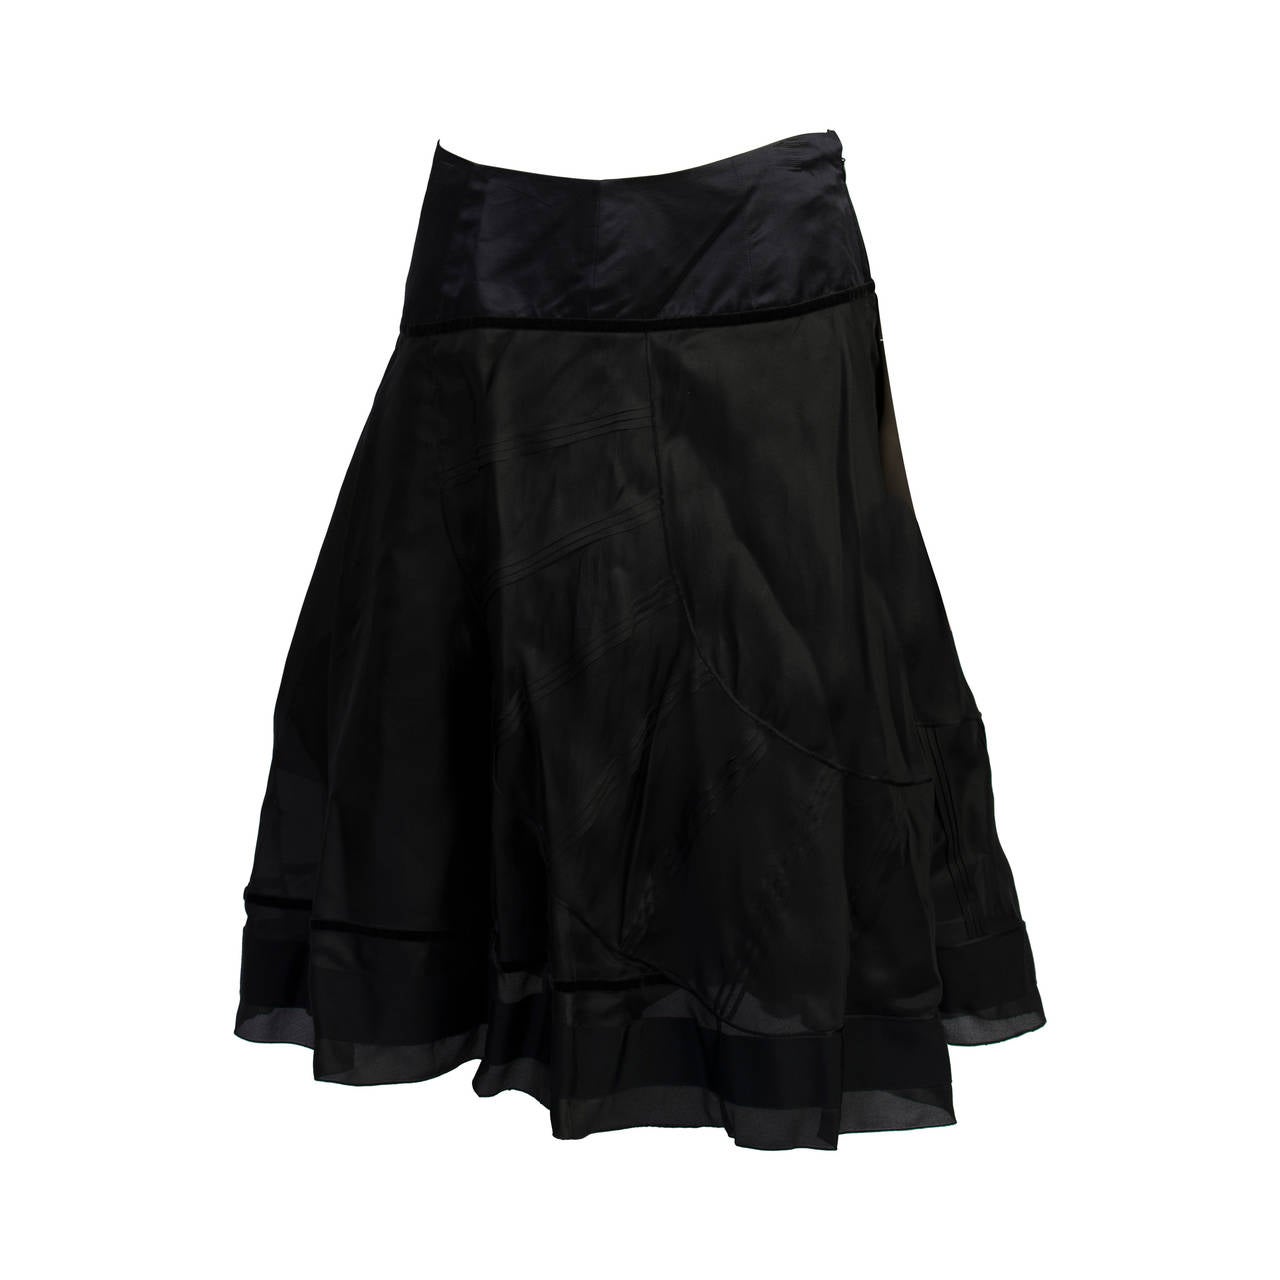 2000s Celine black skirt